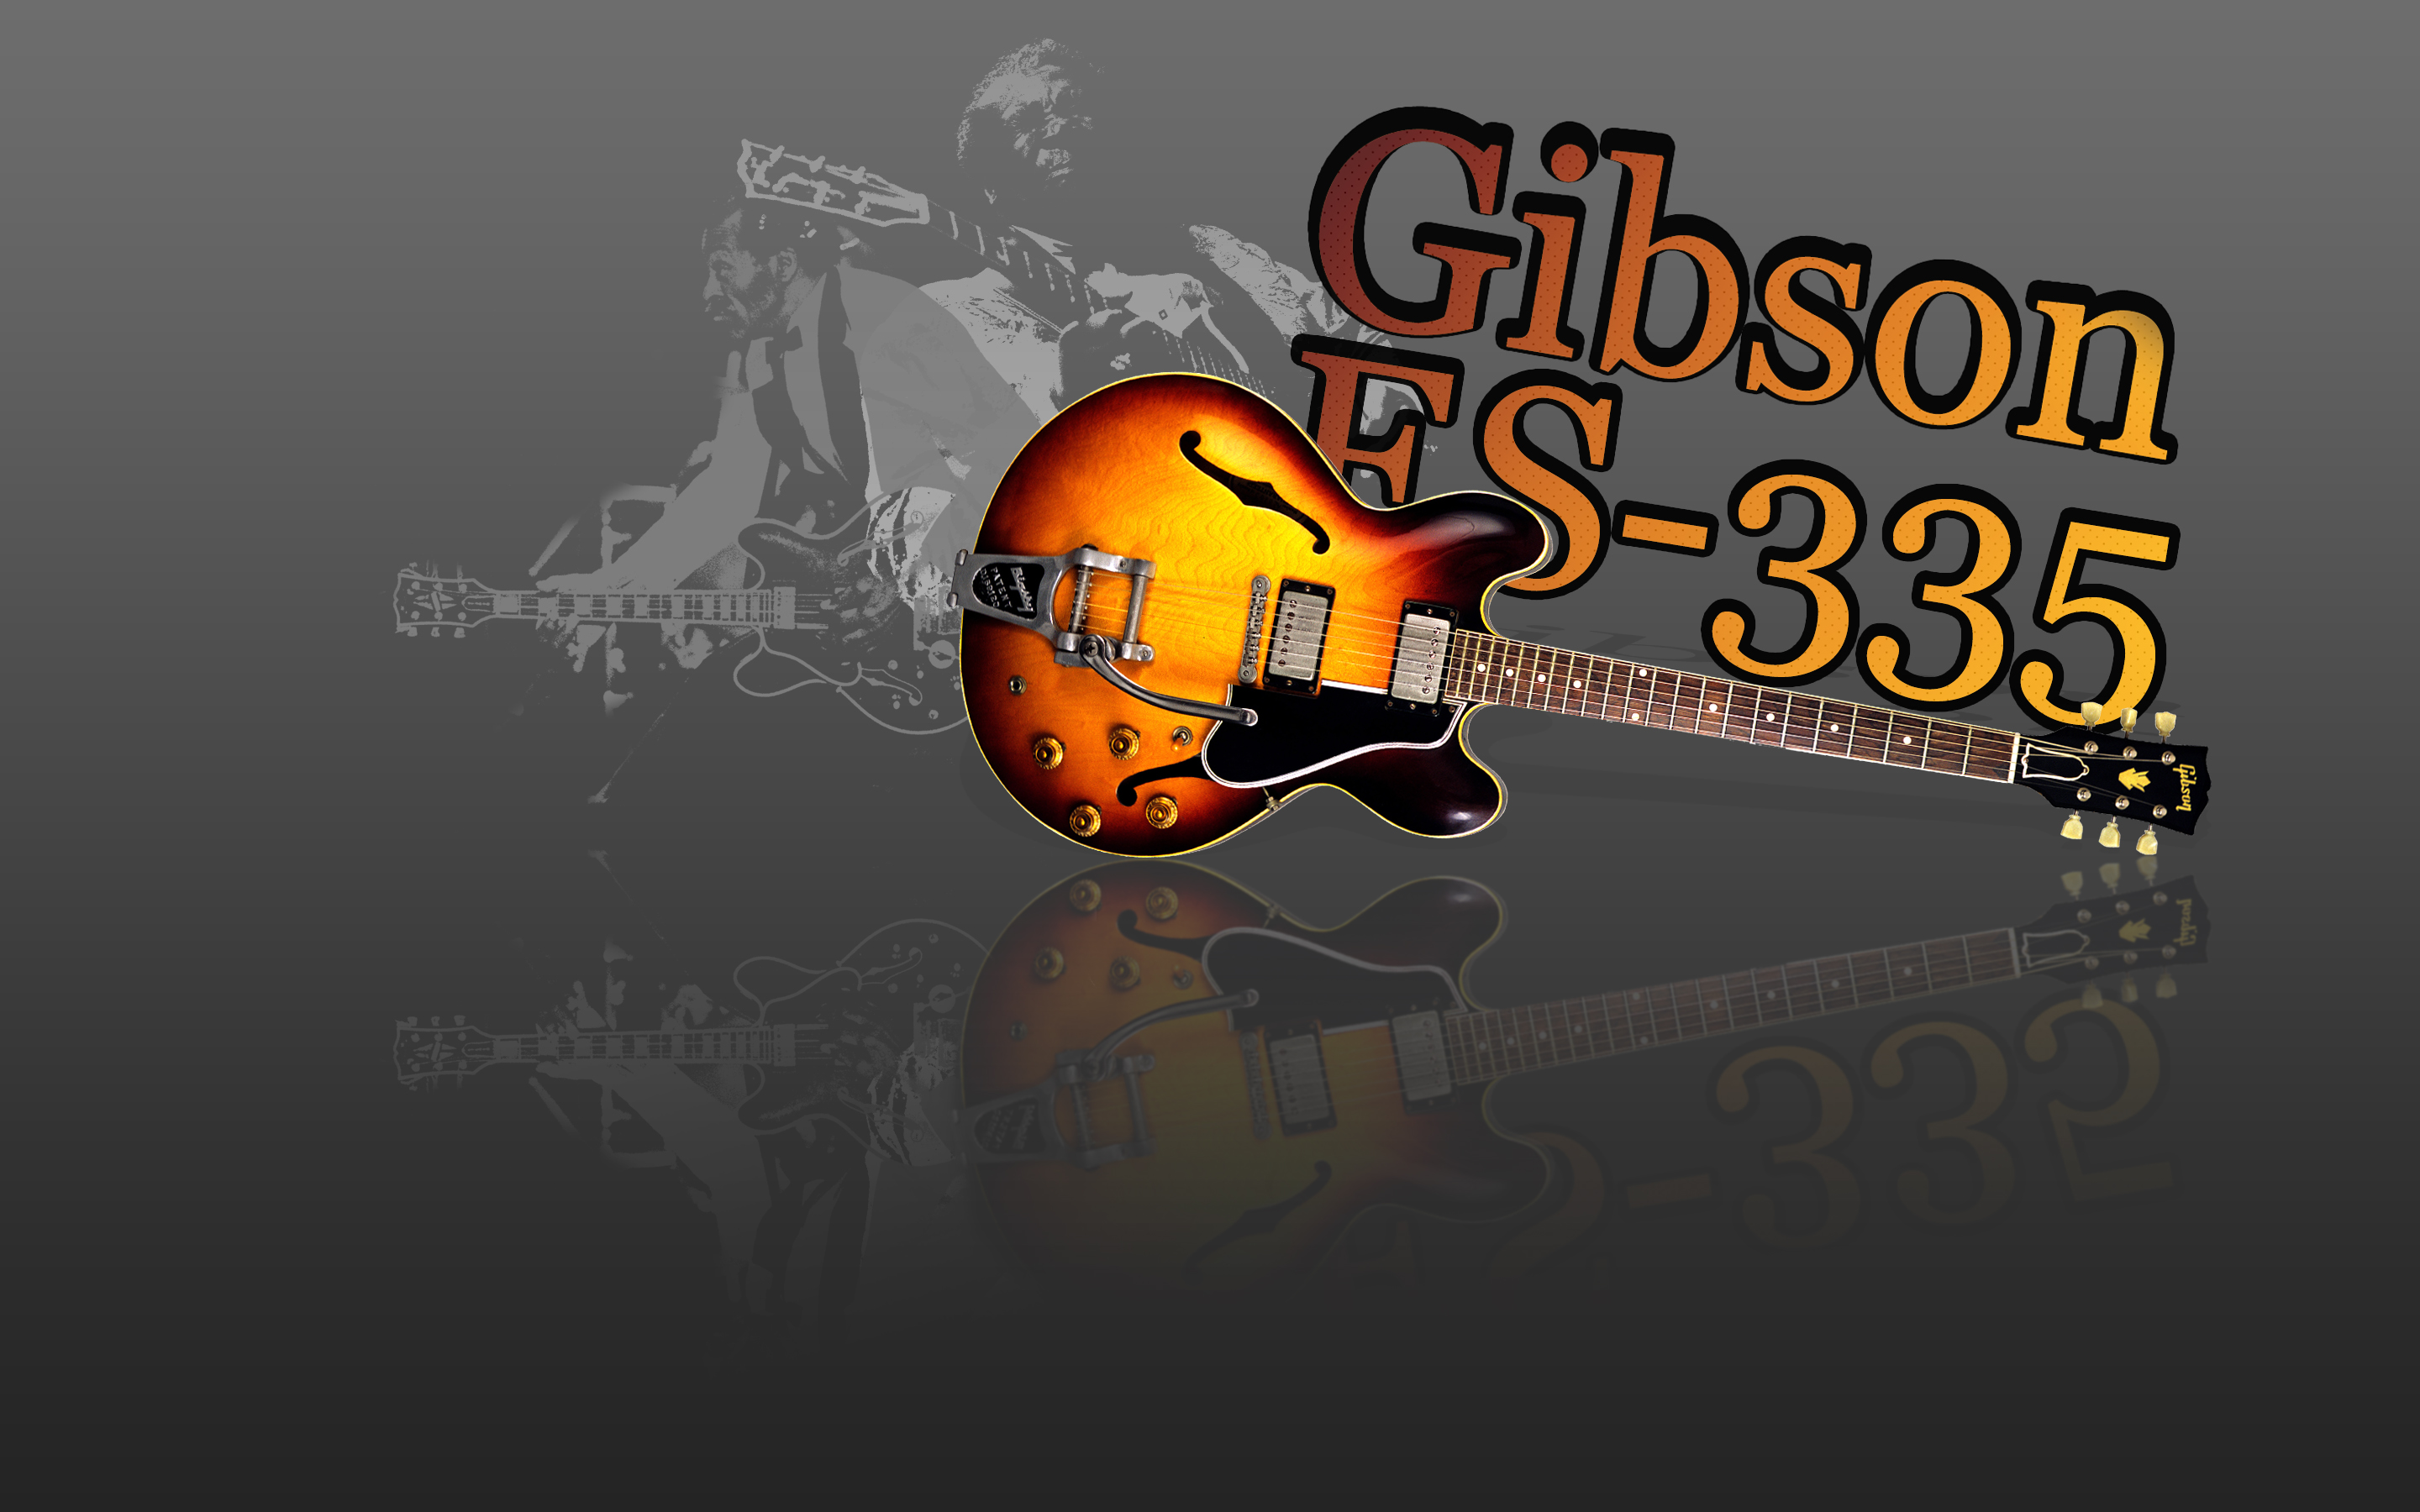 Descarga gratuita de fondo de pantalla para móvil de Música, Guitarra.